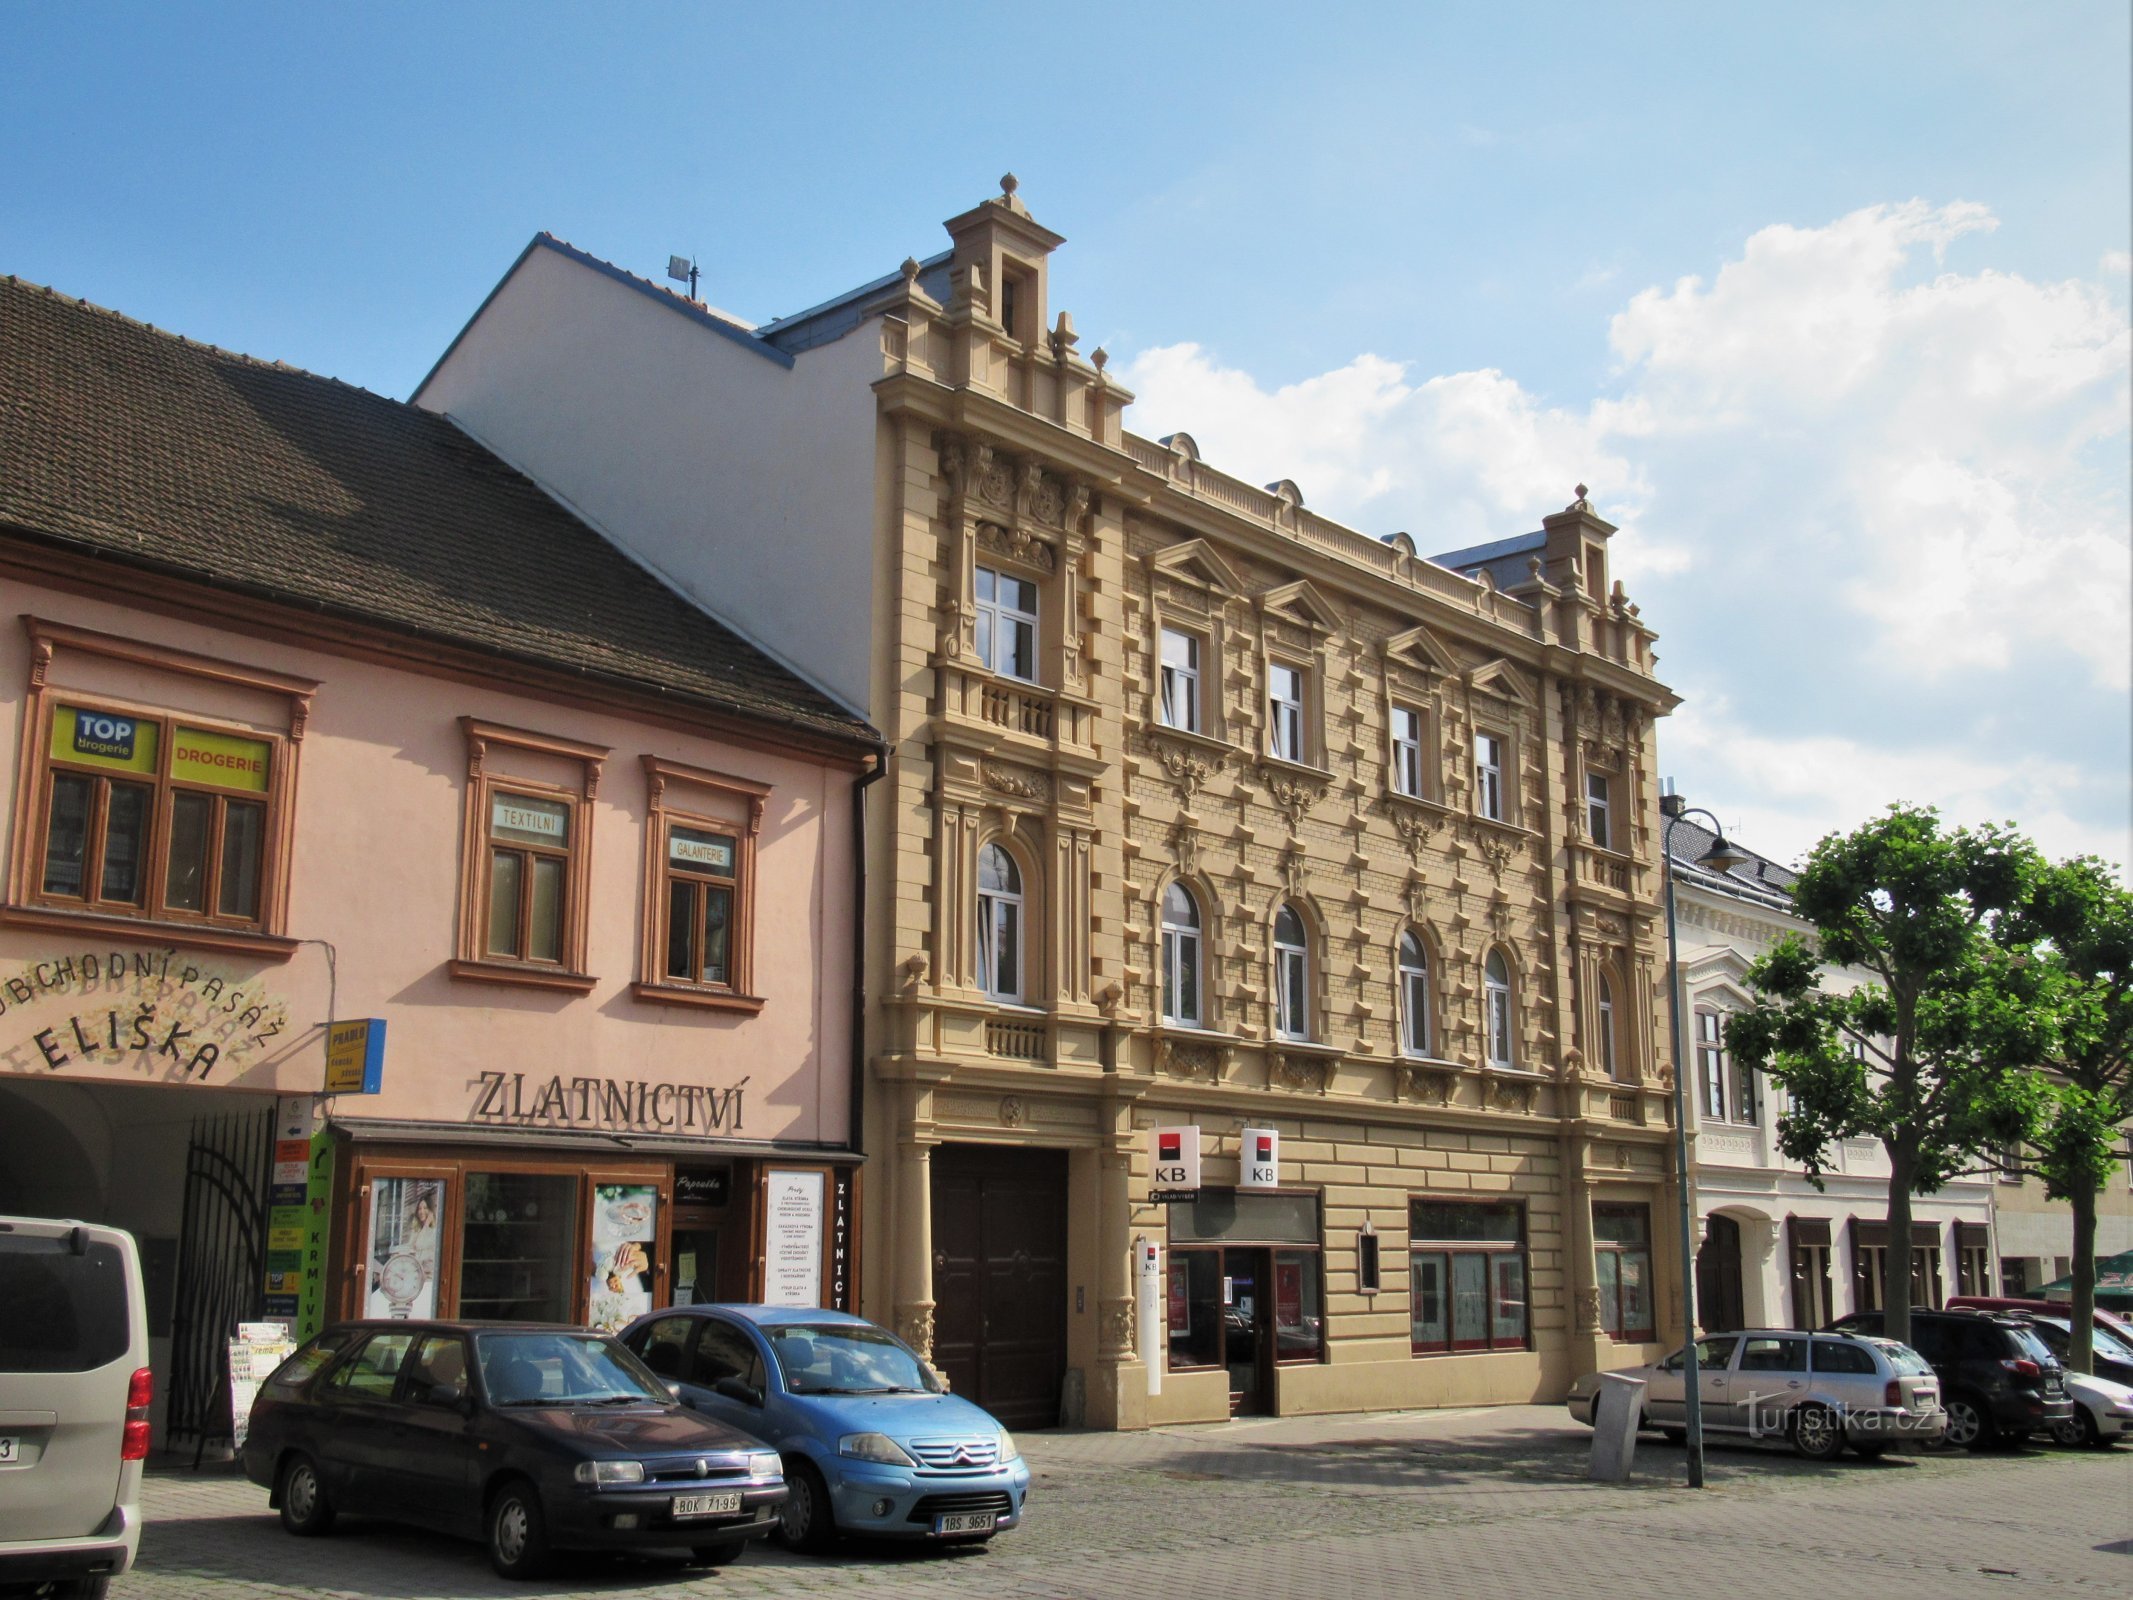 Židlochovice - Haus Nr. 28 auf Náměstí Míru